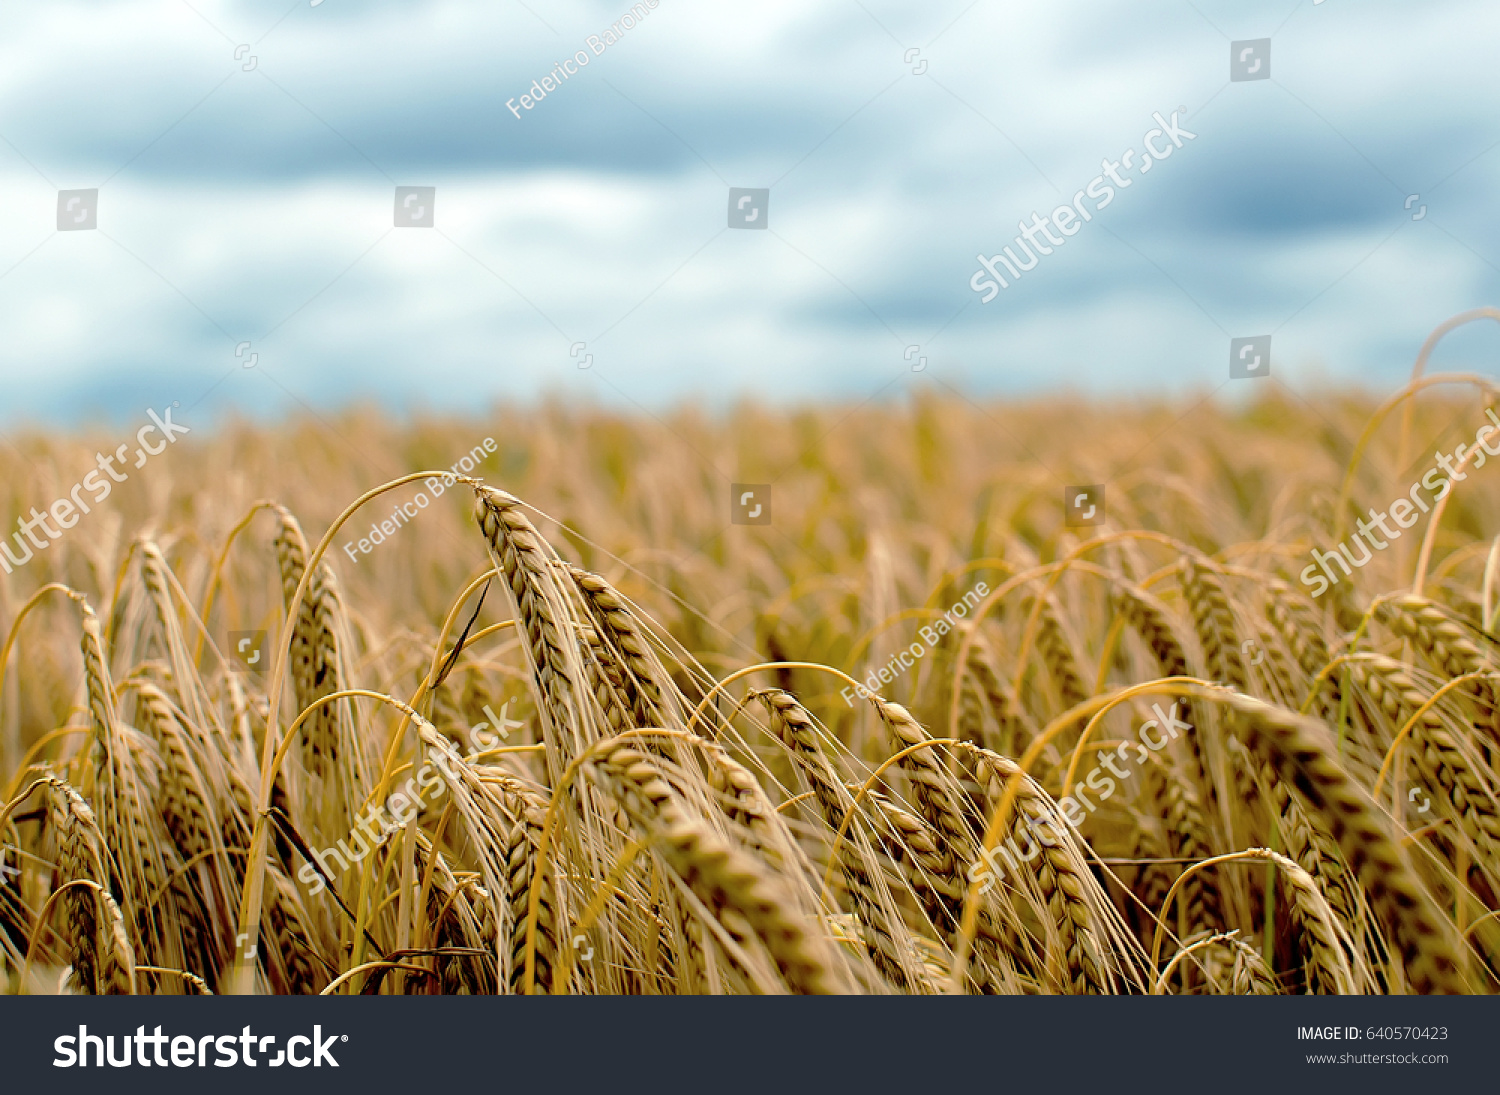 stock-photo-beautiful-barley-field-in-pe